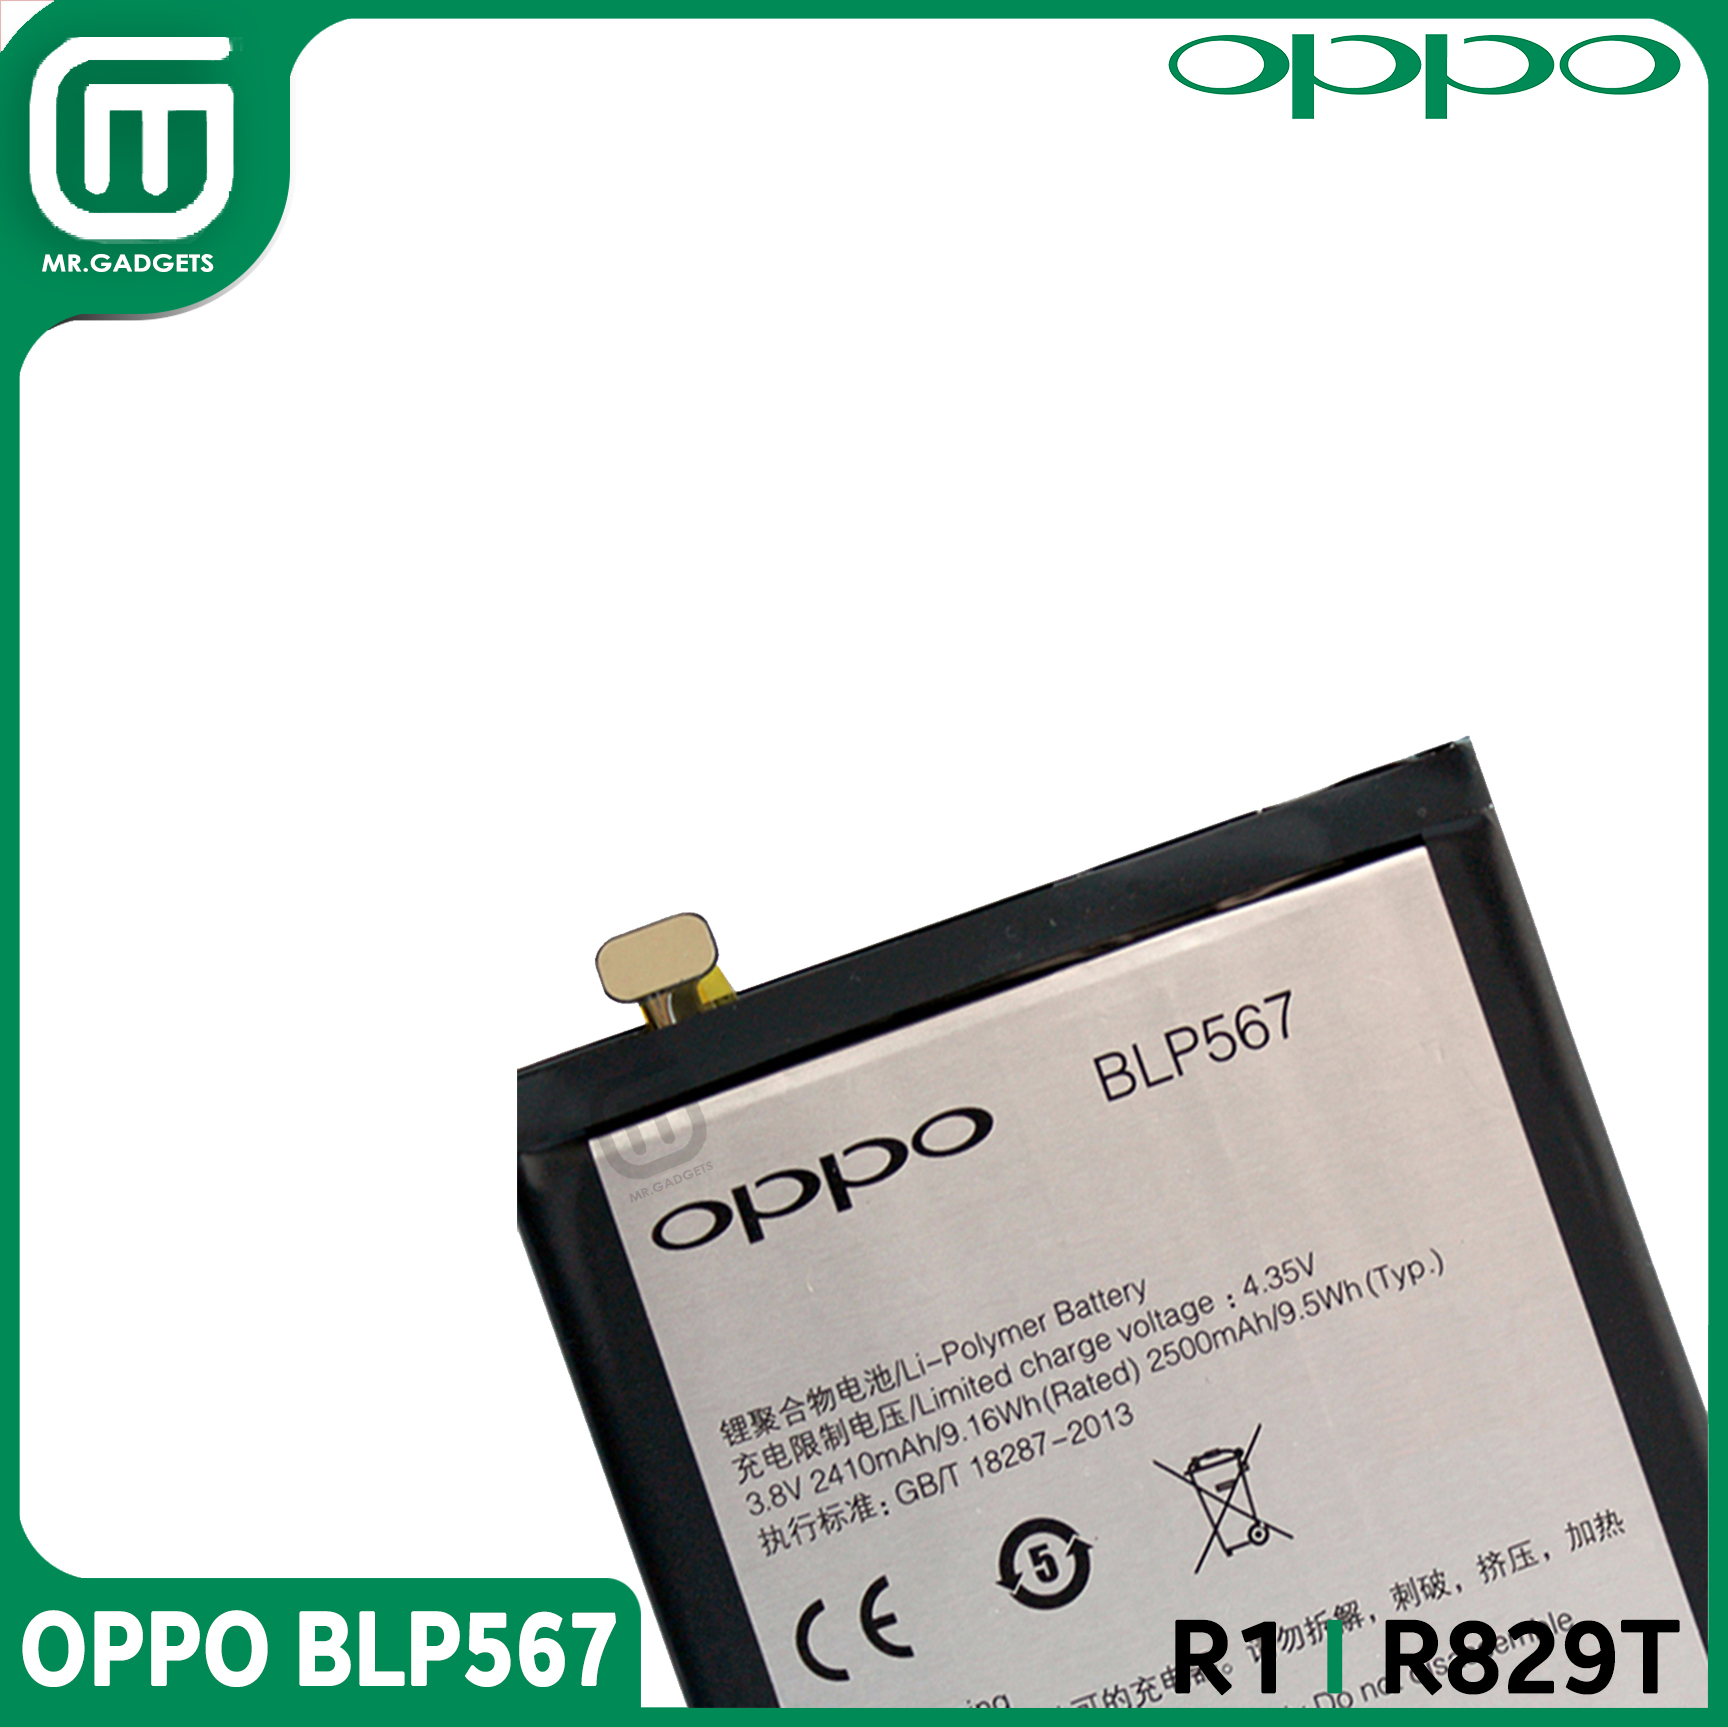 ポップリベットファスナー ウルトラグリップリベット(ステンレス ステンレス製) SSD-8160-UGX - 1